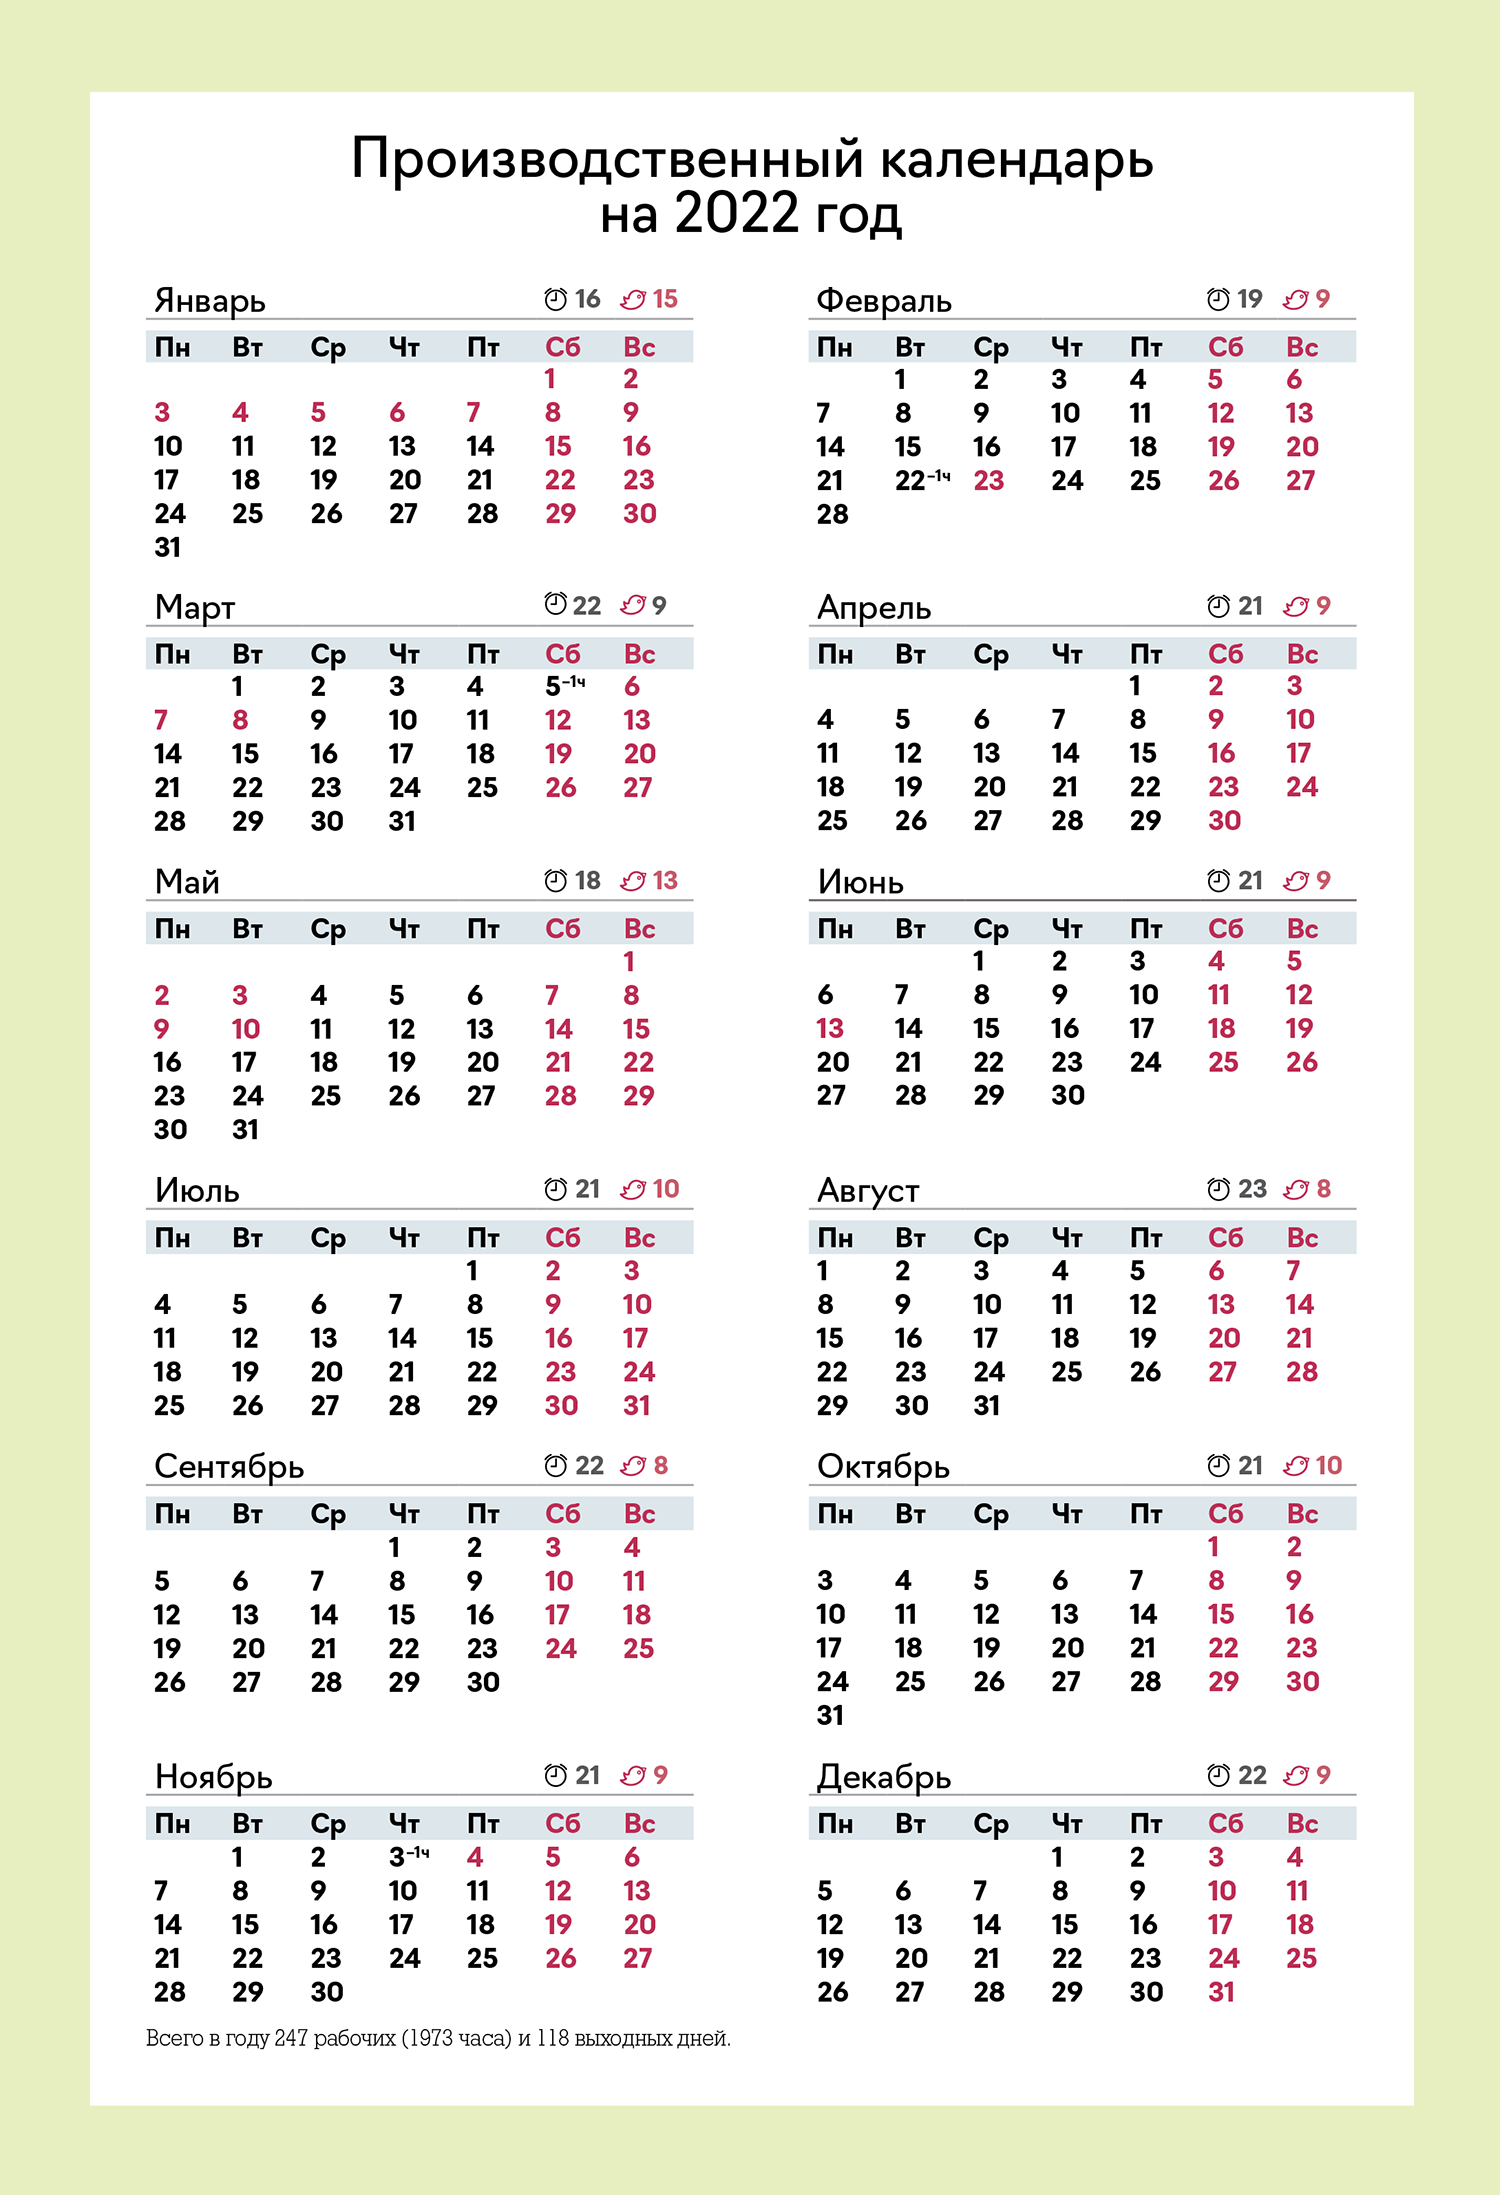 Бухгалтерский календарь на 2022 год. Календарь бухгалтера. Производственный календарь на 2022 год. Календарь бухгалтера на 2022.